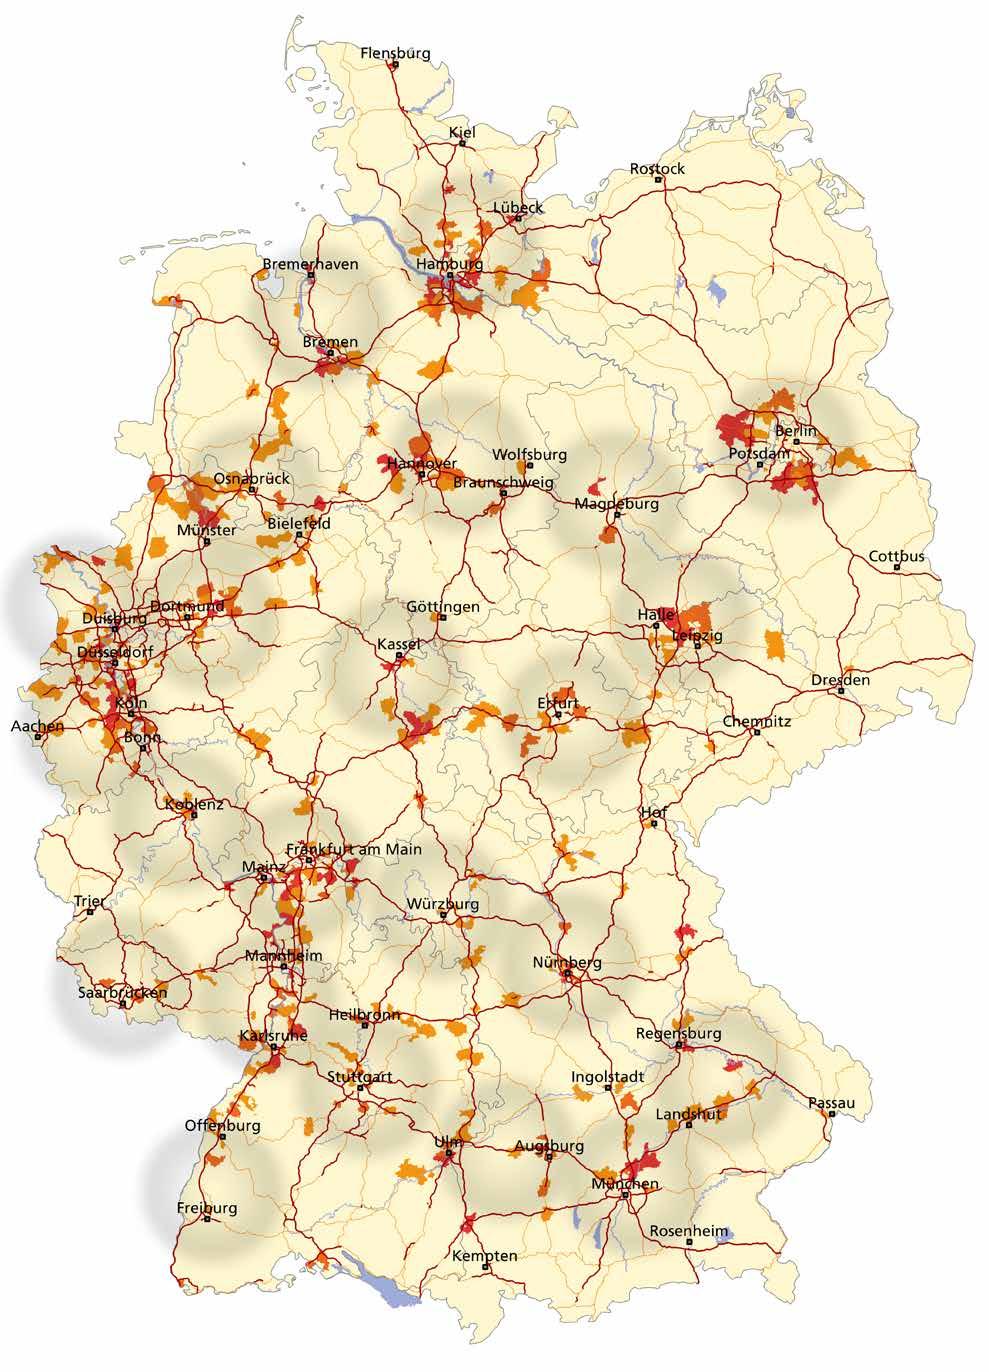 LOGISTIKIMMOBILIEN MARKT UND STANDORTE 2015 LOGISTIKREGIONEN IN DEUTSCHLAND Die 23 deutschen Logistikregionen